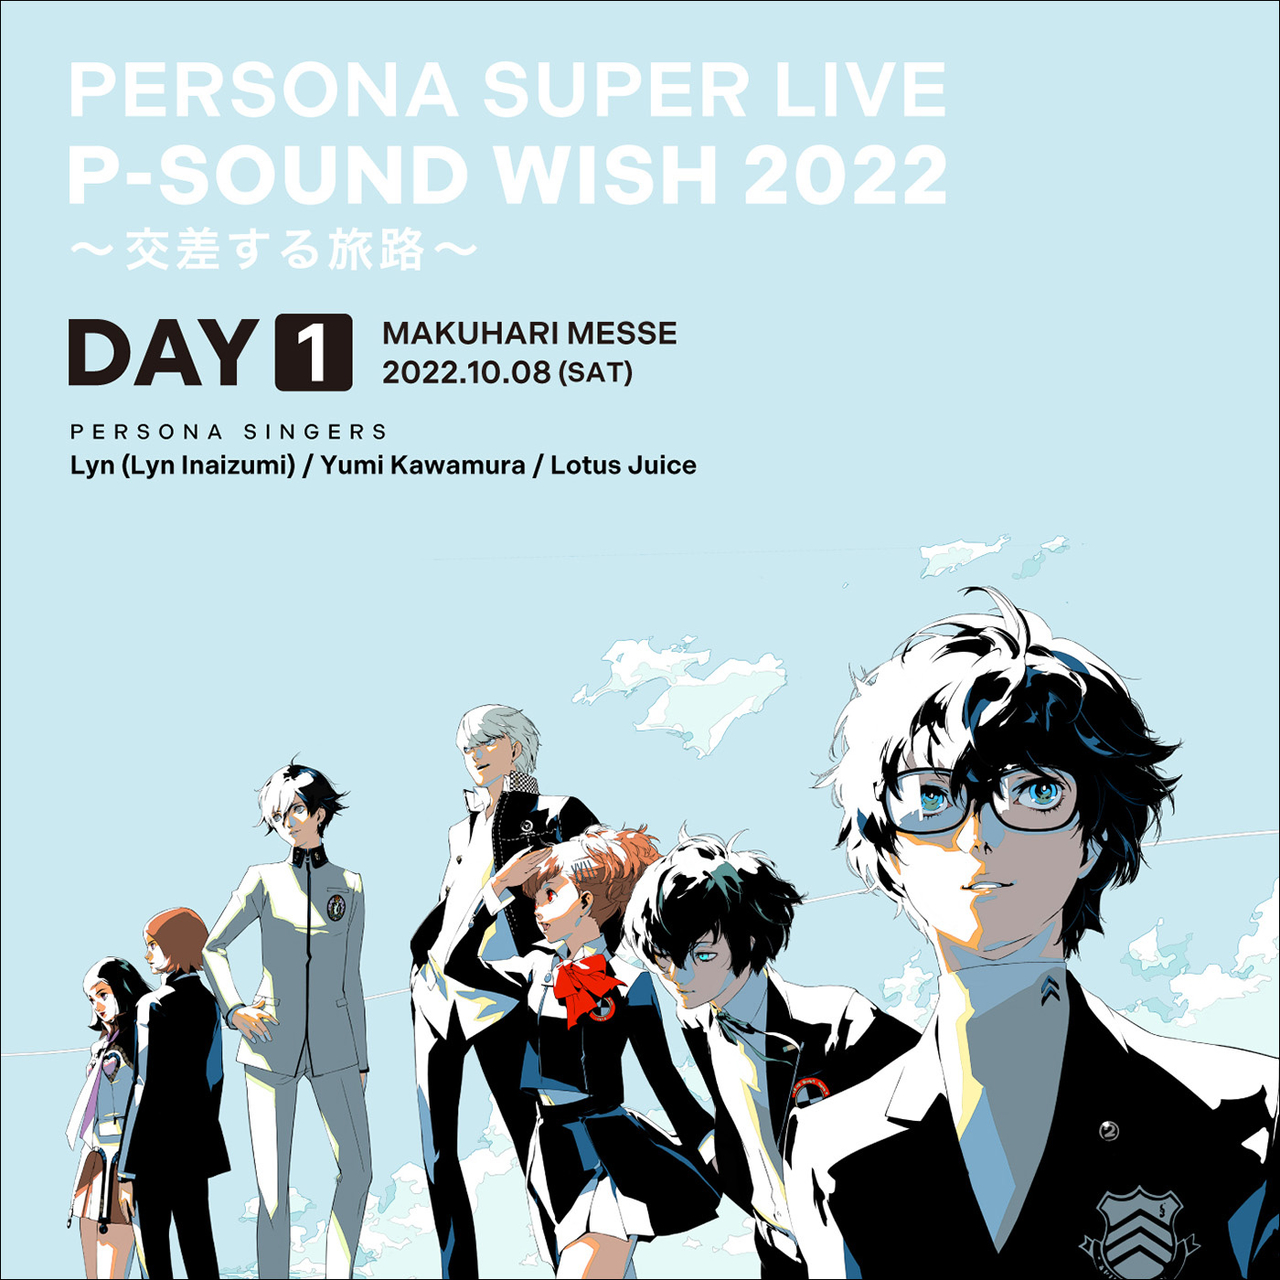 Persona Super Live P-Sound Wish 2022